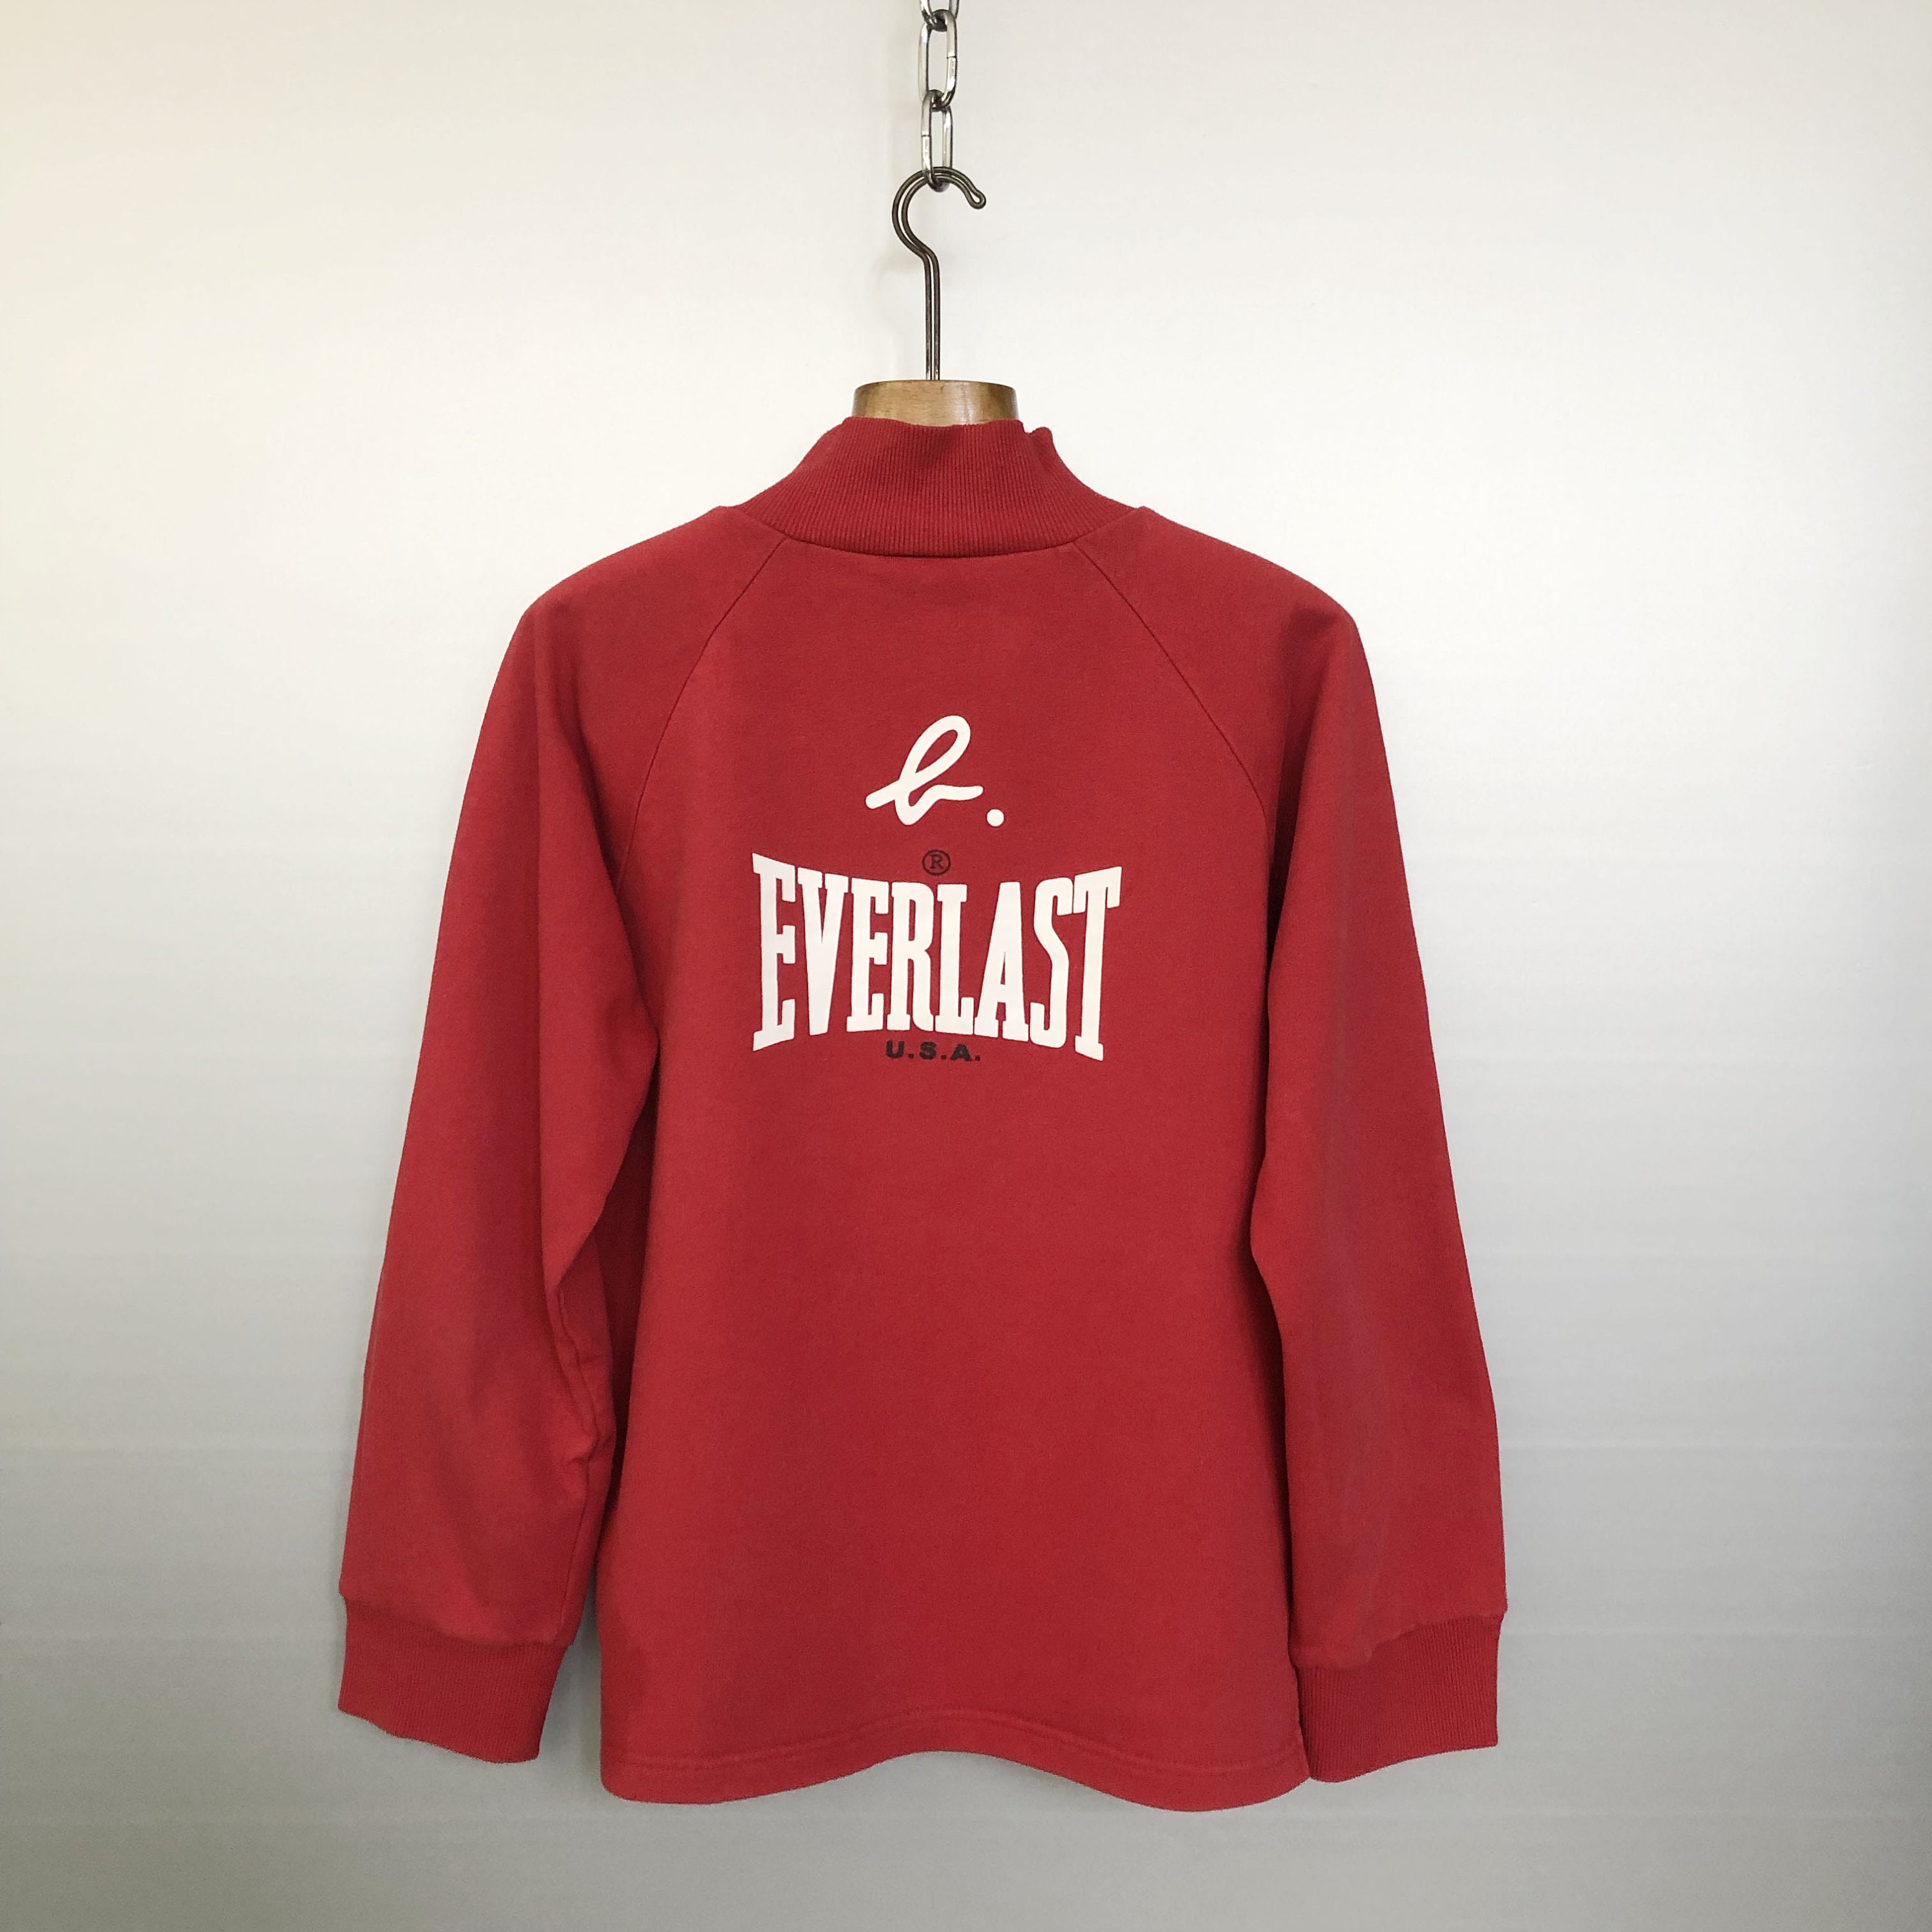 Vintage 90s Everlast Sweatshirt Everlast Crewneck Everlast Sweater Pullover  Everlast Sportswear Everlast Print Logo Grey Small